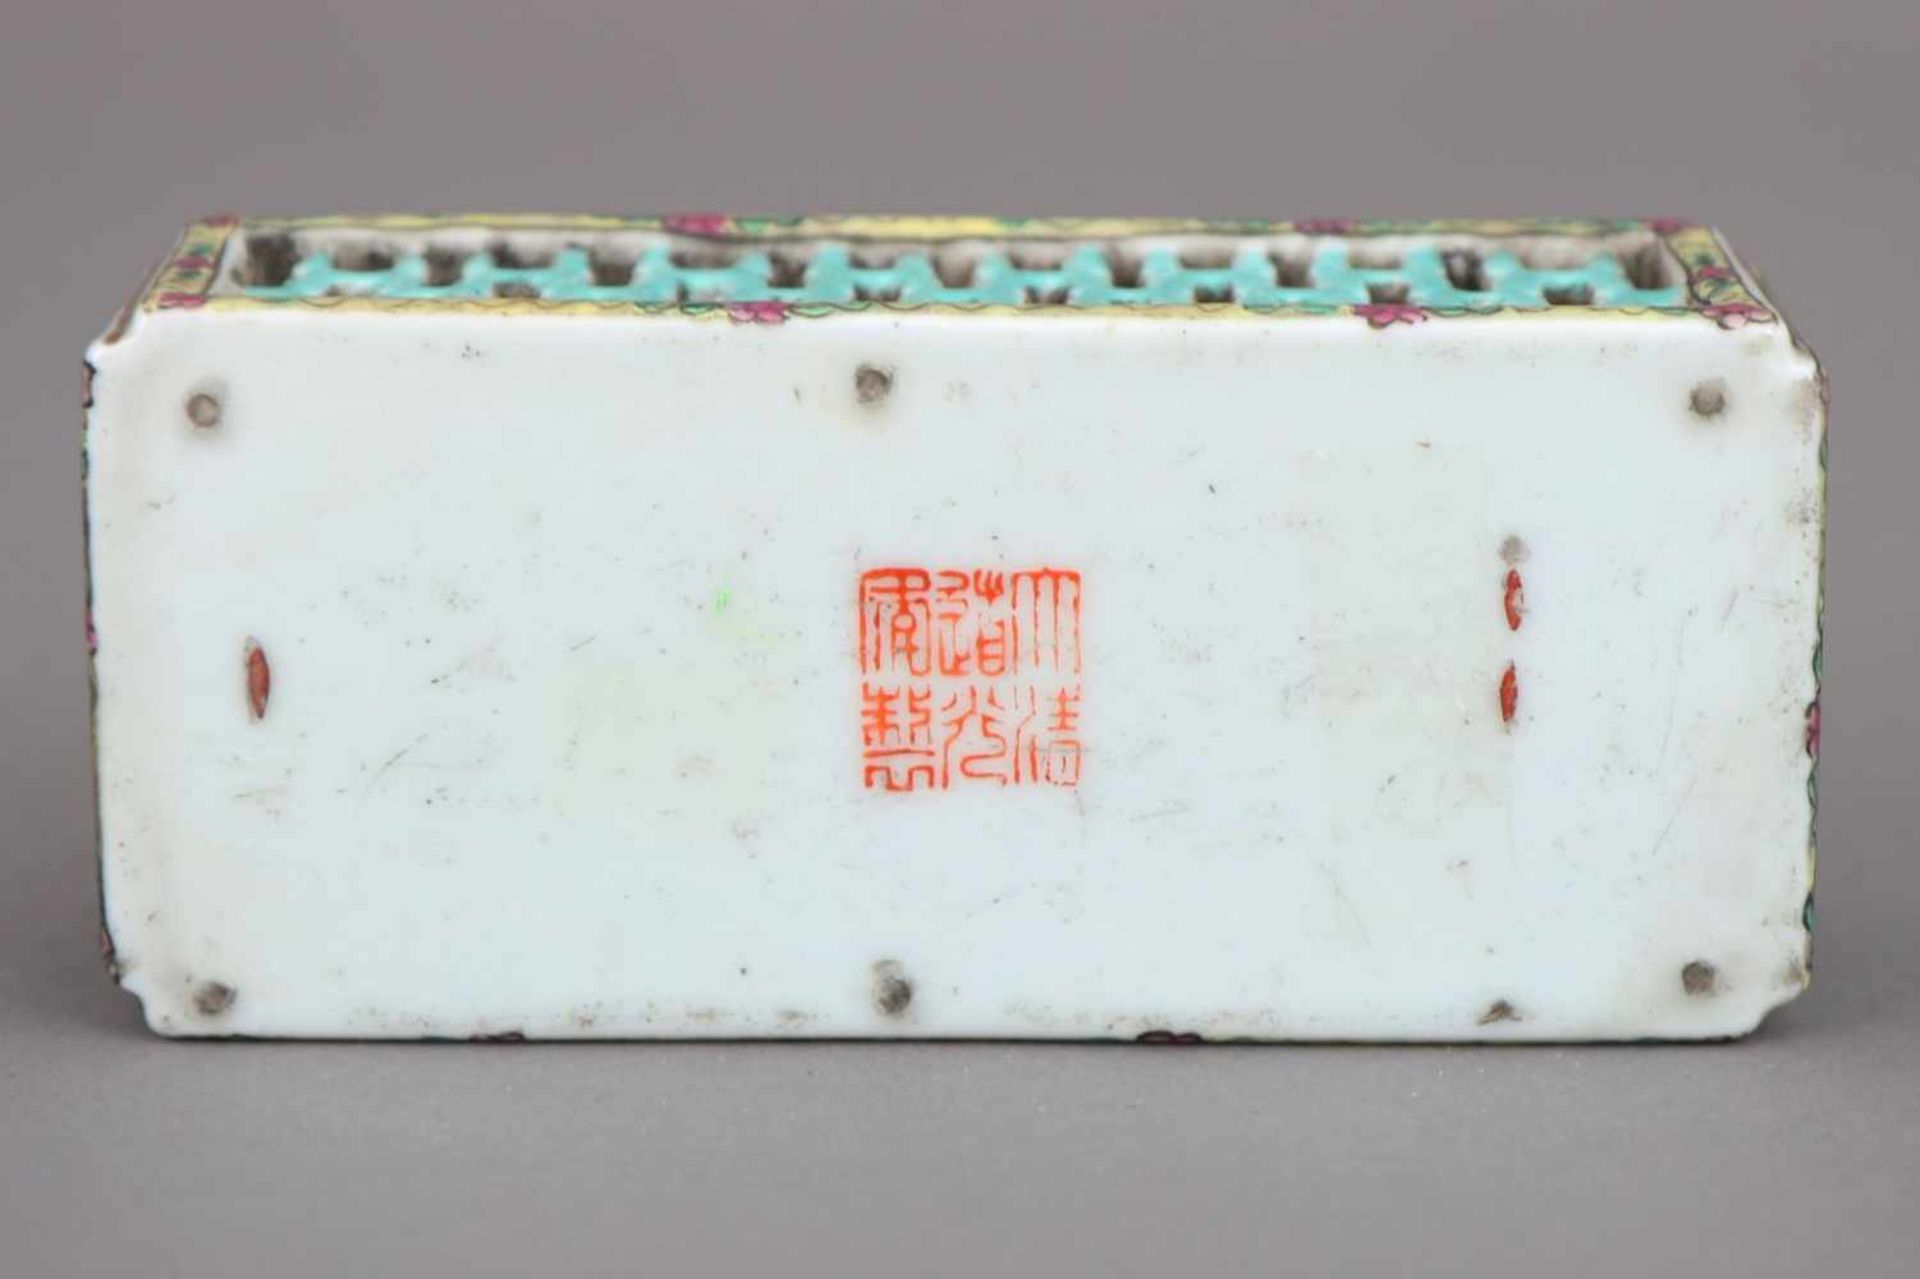 Chinesischer GrillenkäfigPorzellan, wohl Kanton, 19. Jahrhundert, eckiger Korpus, Wandung - Bild 2 aus 2